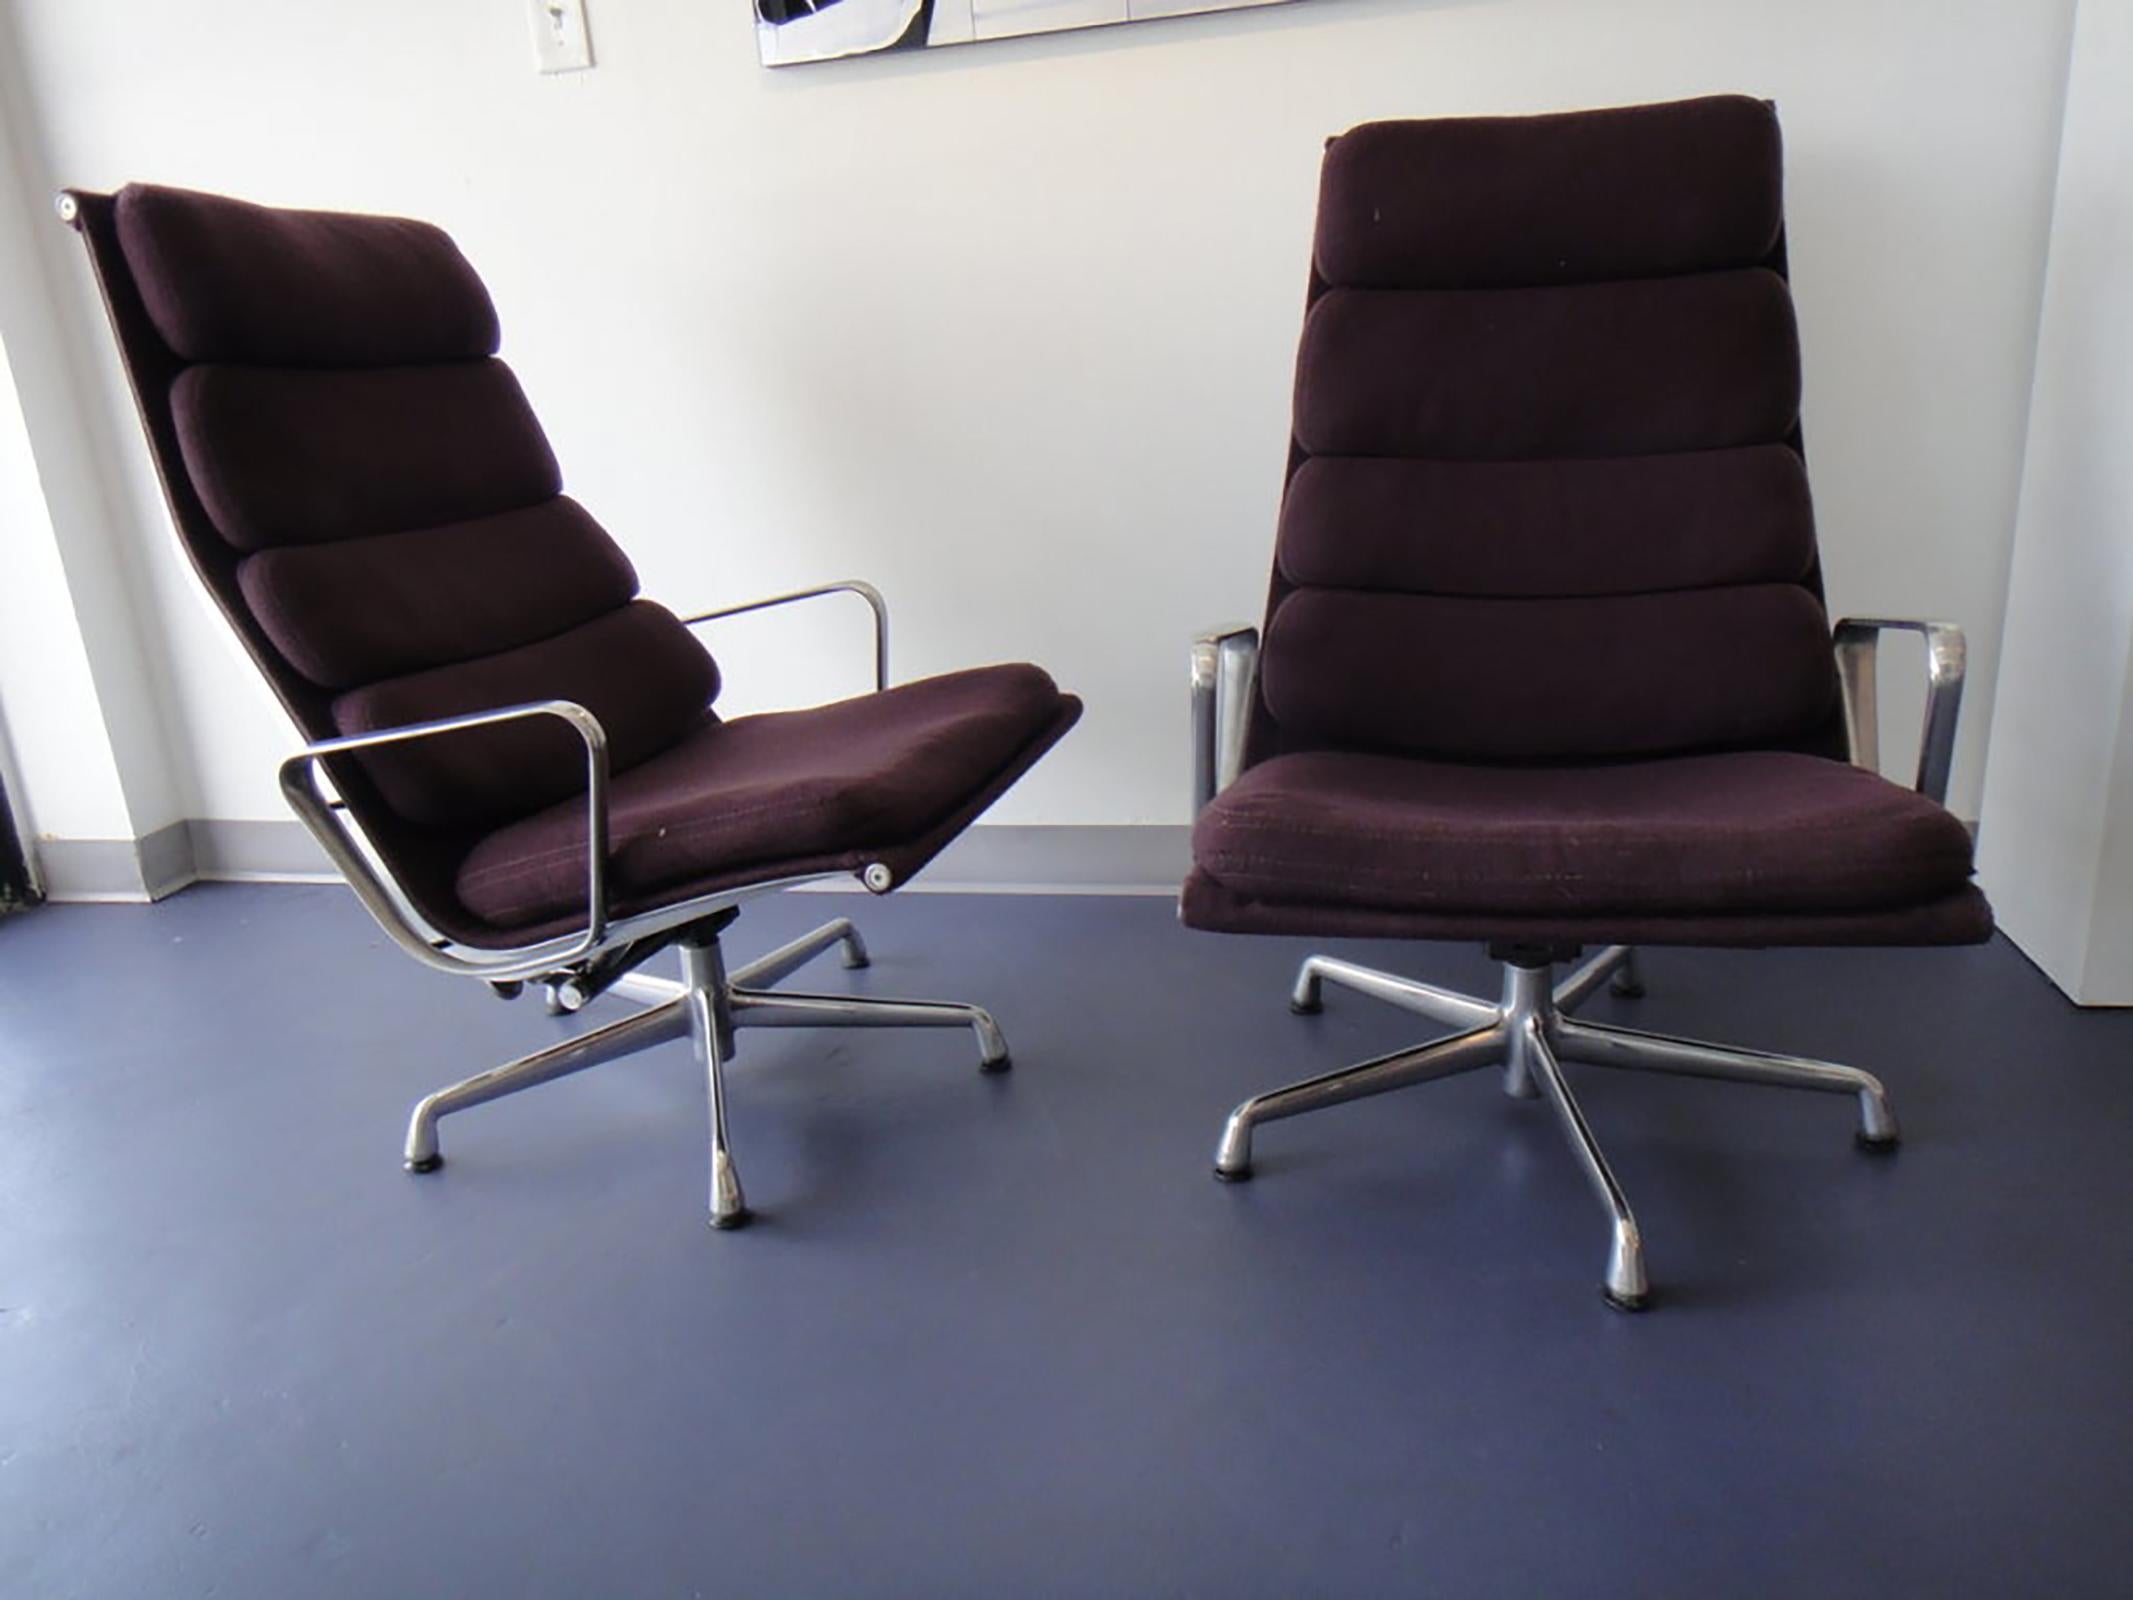 Paire de chaises longues à rembourrage souple de la collection Aluminium Group, conçues par CHARLES &RAY EAMES et fabriquées par HERMAN MILLER.
Tissu violet foncé avec base en aluminium et mécanisme de pivotement et d'inclinaison